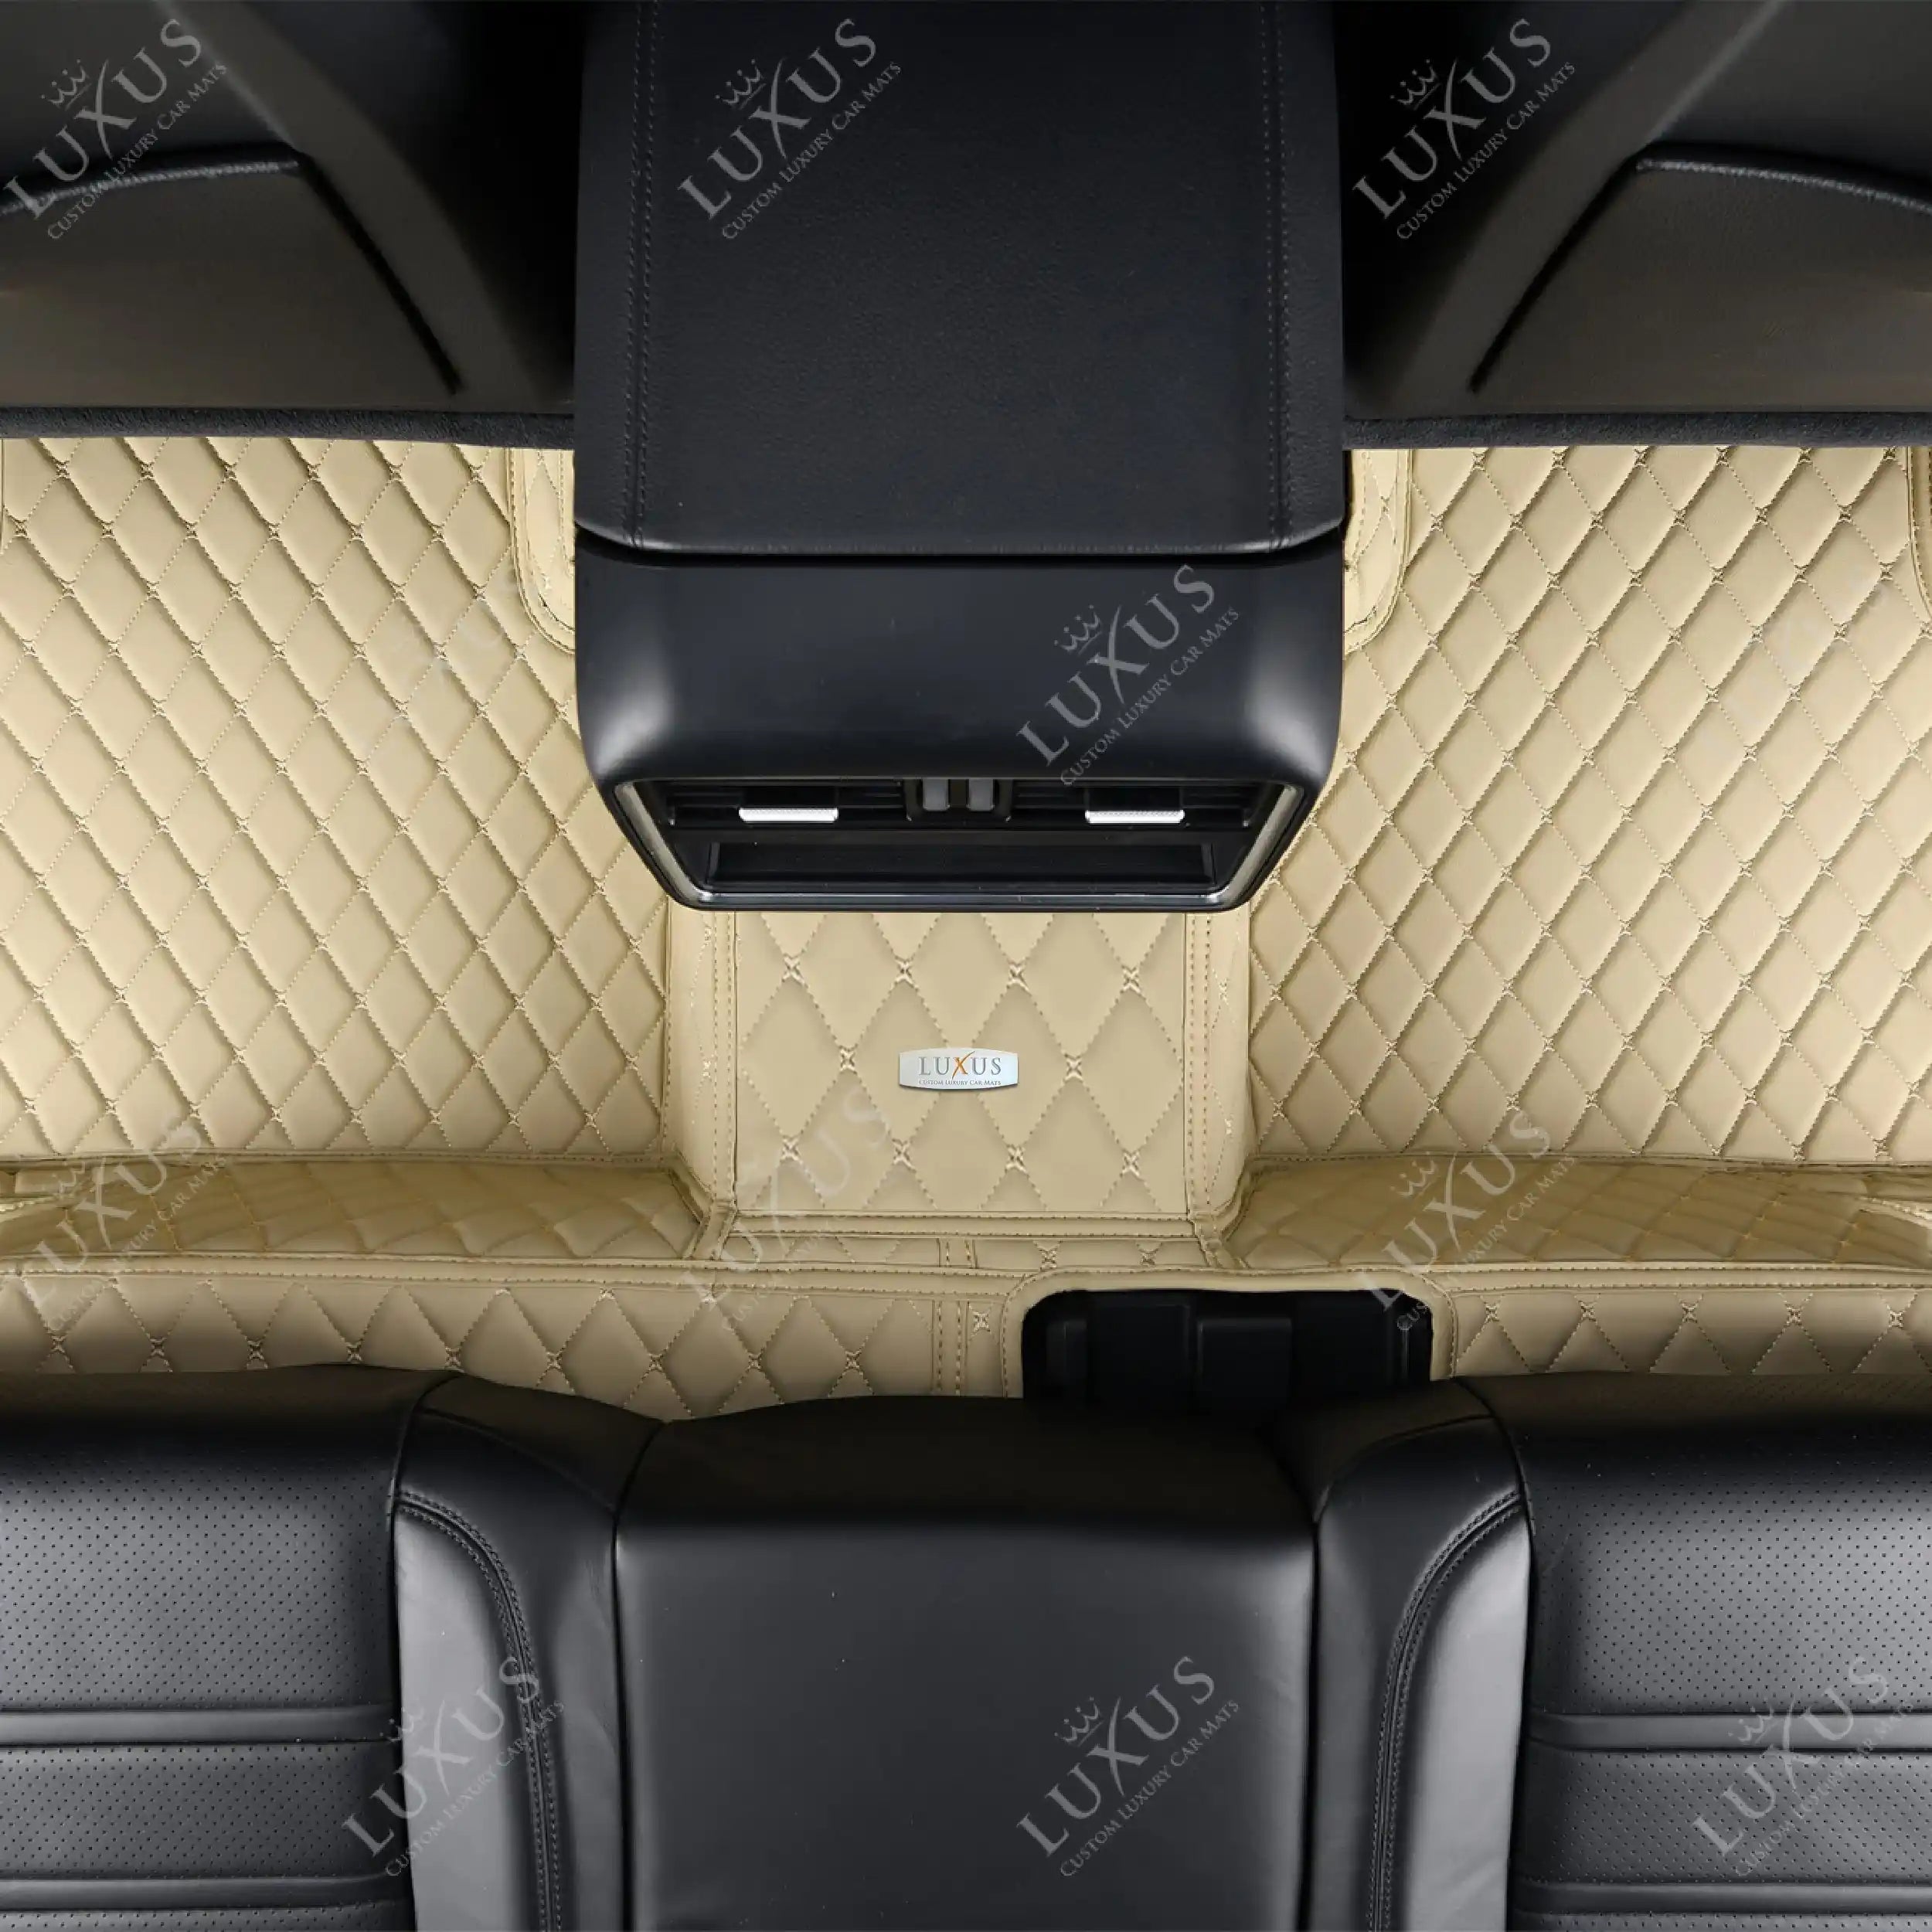 Luxus Car Mats™ - Juego de alfombrillas de lujo beige crema